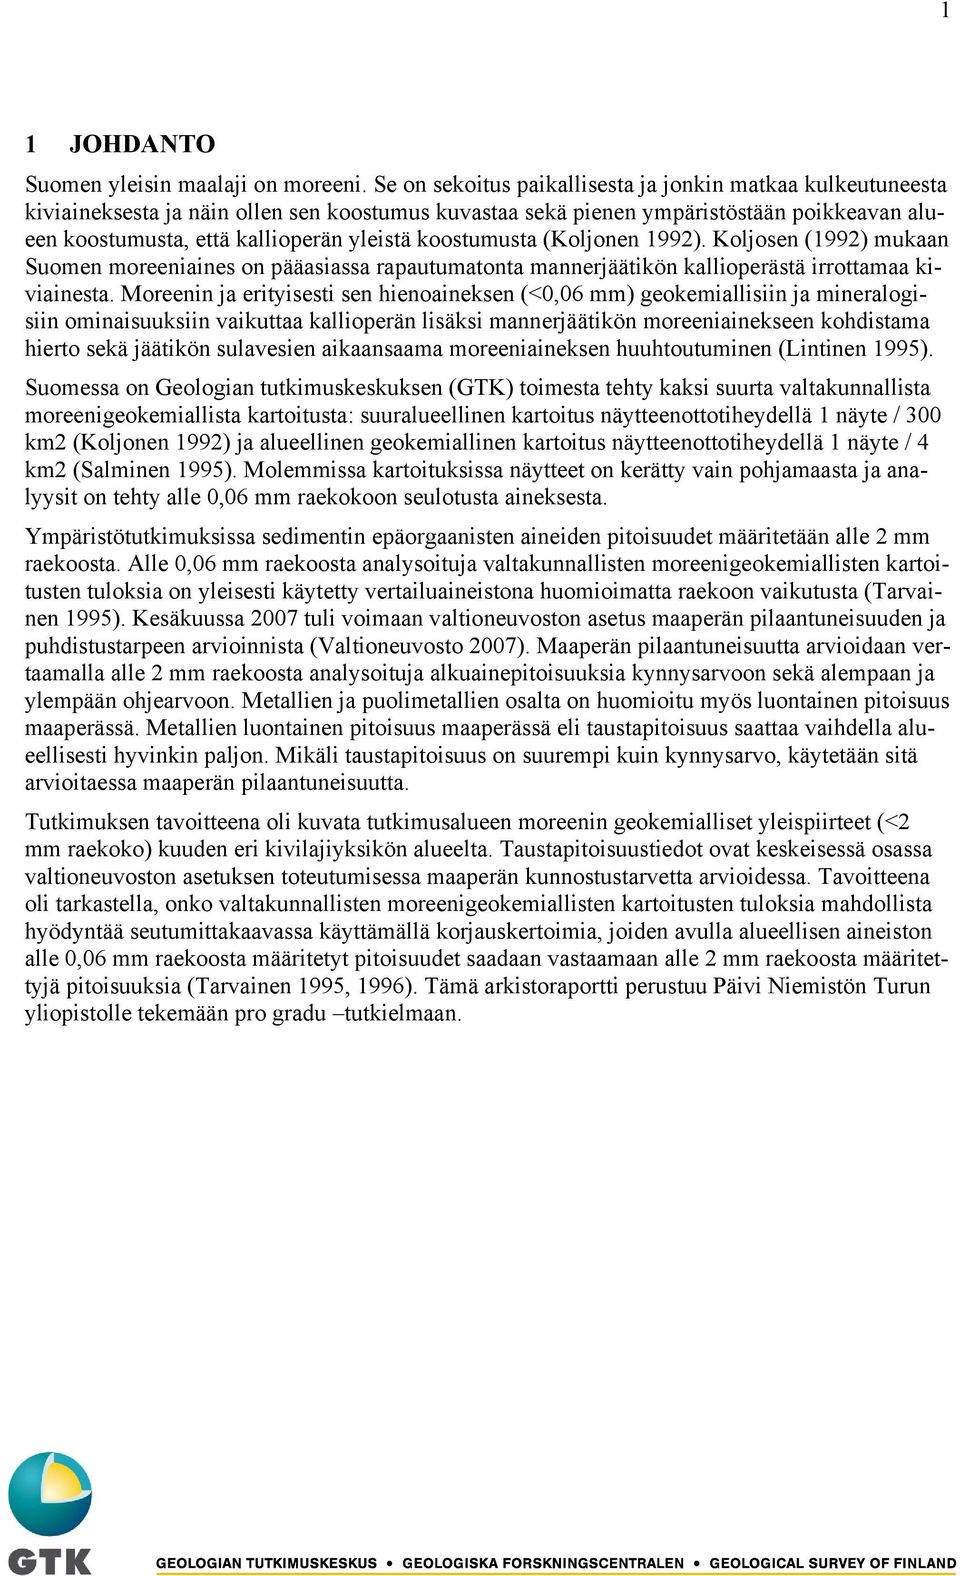 koostumusta (Koljonen 1992). Koljosen (1992) mukaan Suomen moreeniaines on pääasiassa rapautumatonta mannerjäätikön kallioperästä irrottamaa kiviainesta.